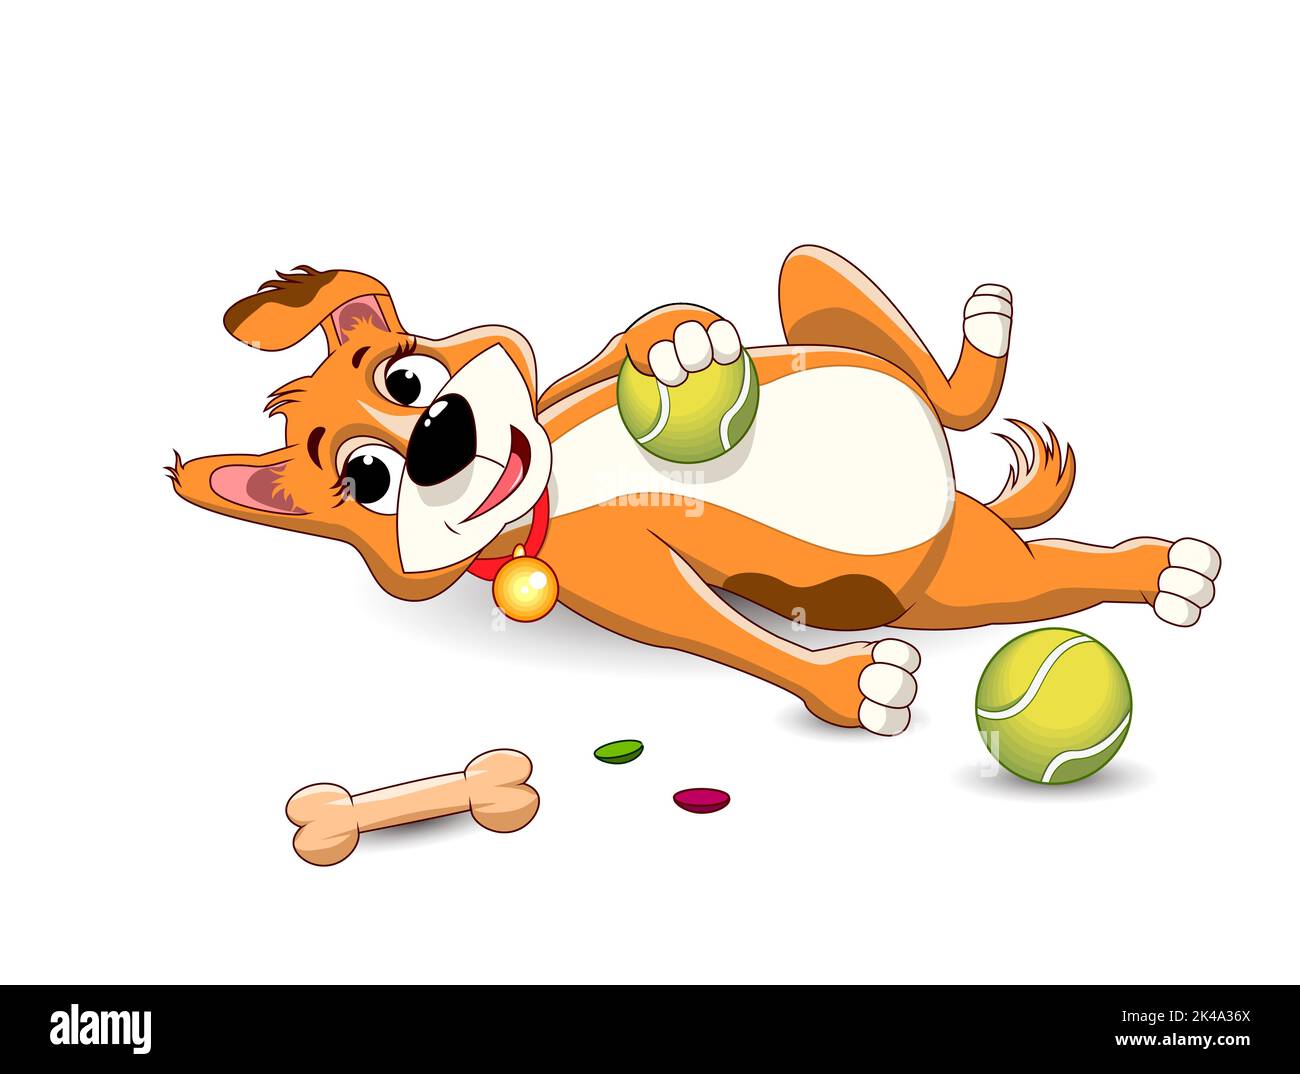 Cartoon kleiner Hund, der sich hinlegt und mit einem Tennisball spielt. Doggy spielt mit Spielzeug. Stock Vektor